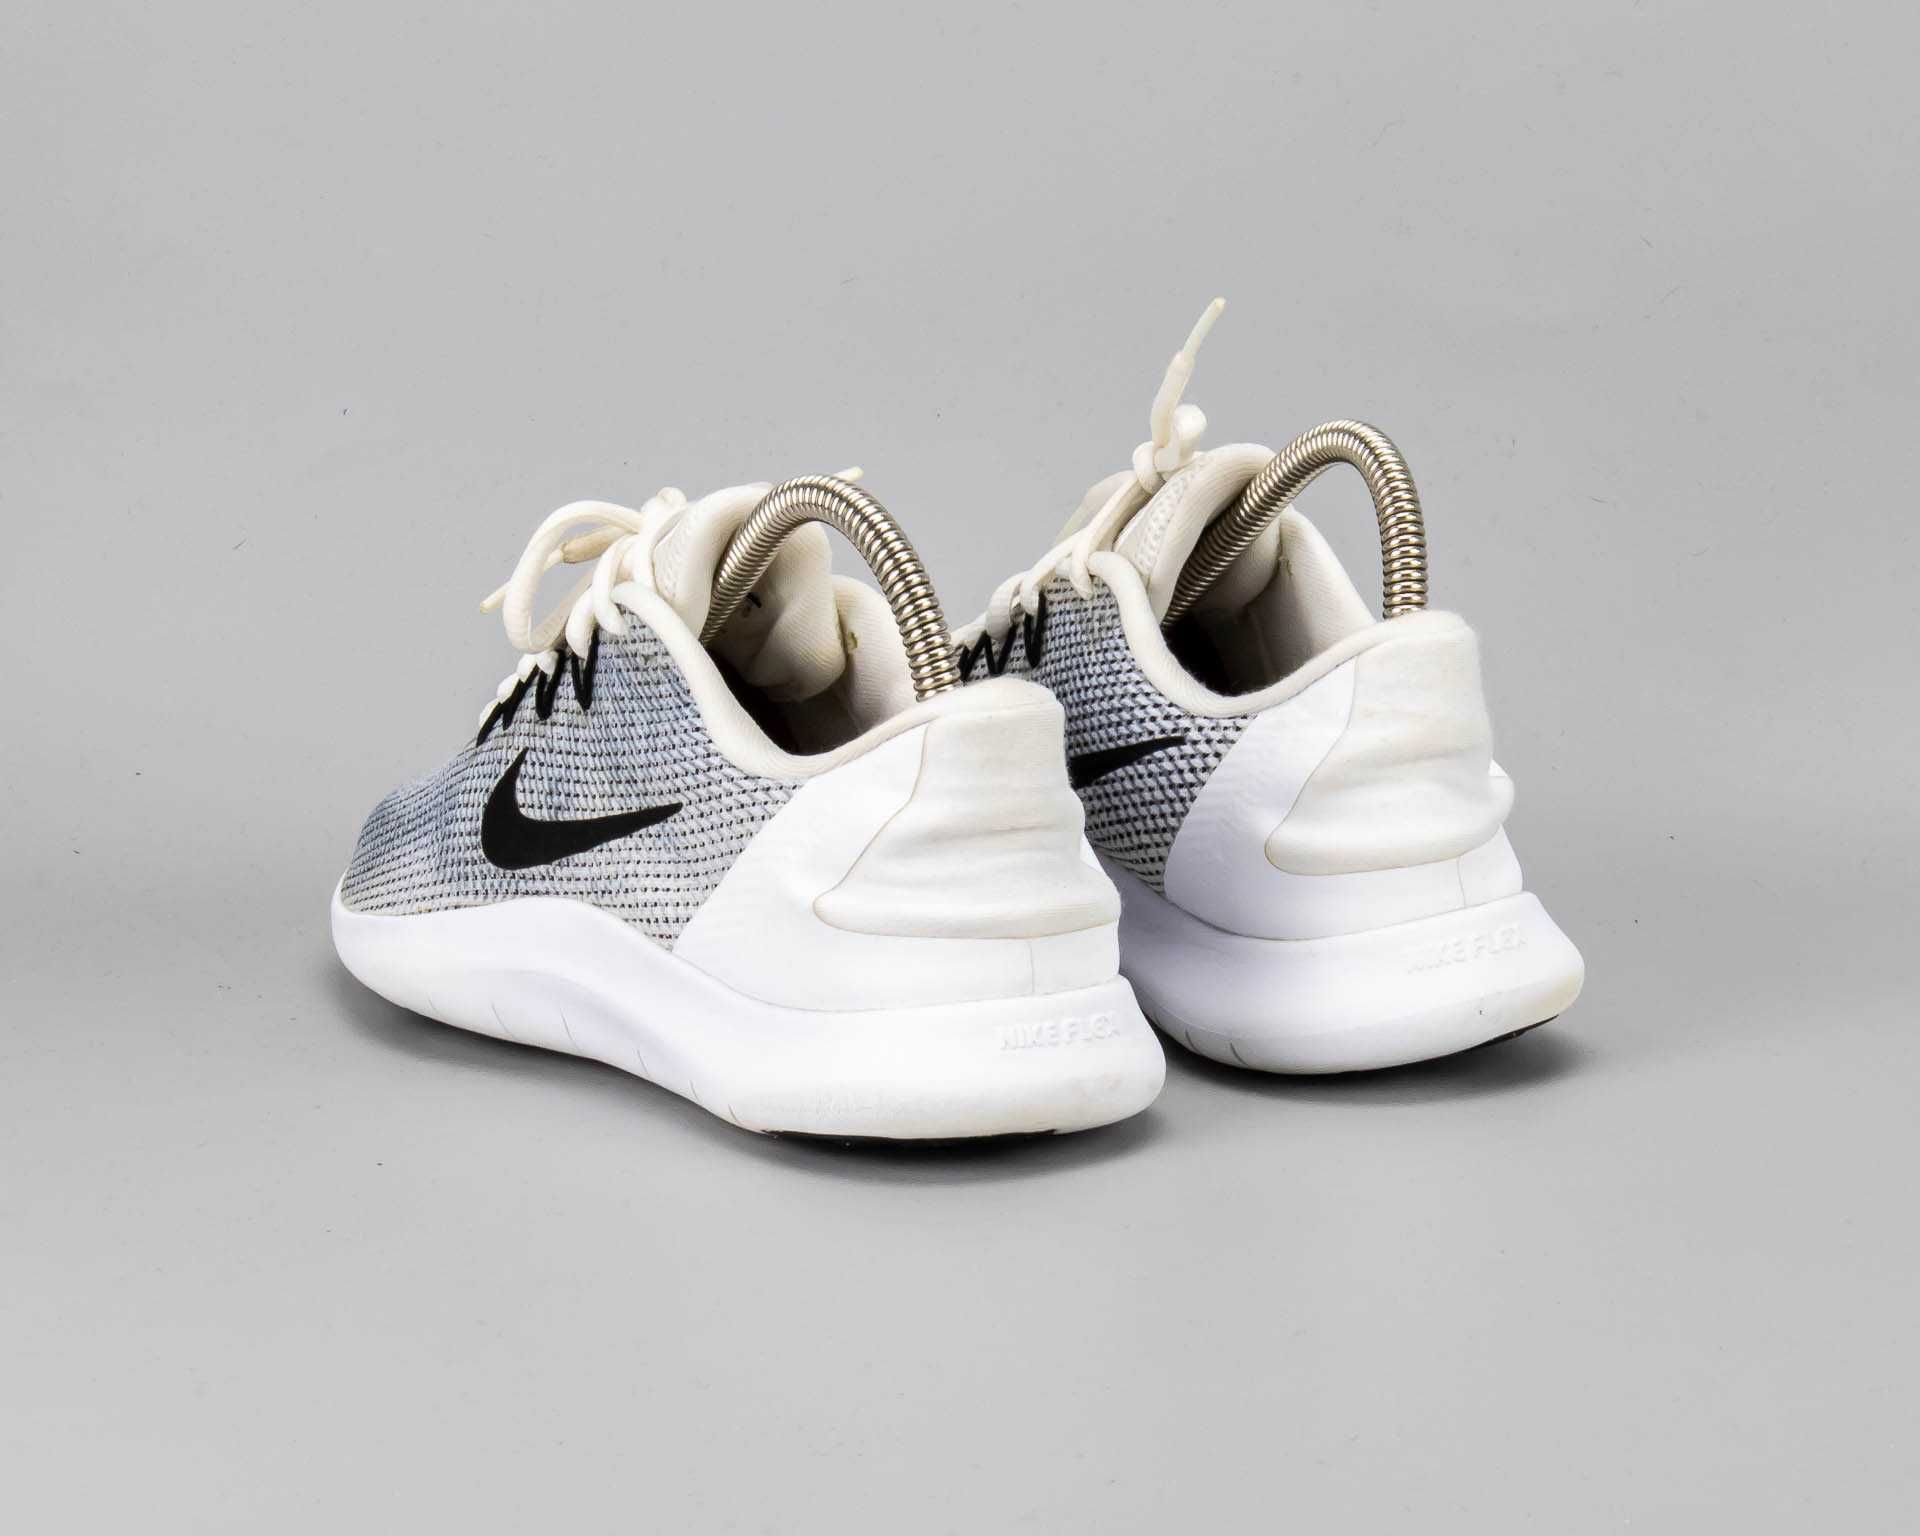 Легкие беговые кроссовки в сетку Nike Flex RN 2018.38 размер